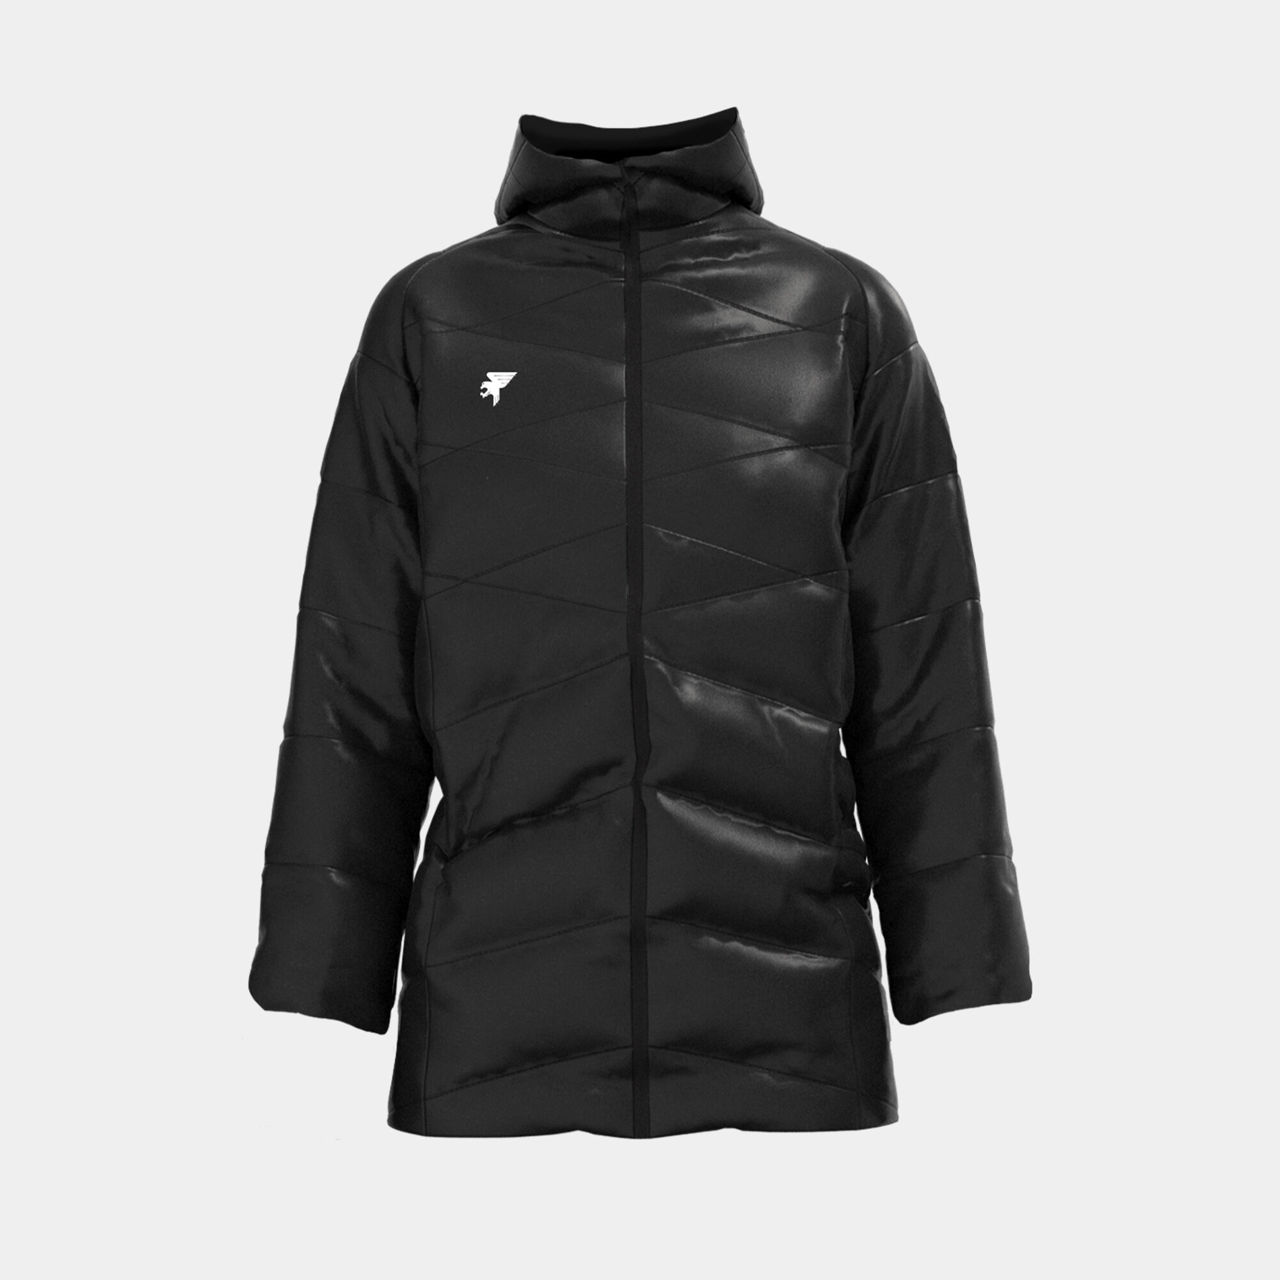 FINAL SALE - Женская куртка JOMA - EXPLORER ANORAK BLACK Купить в